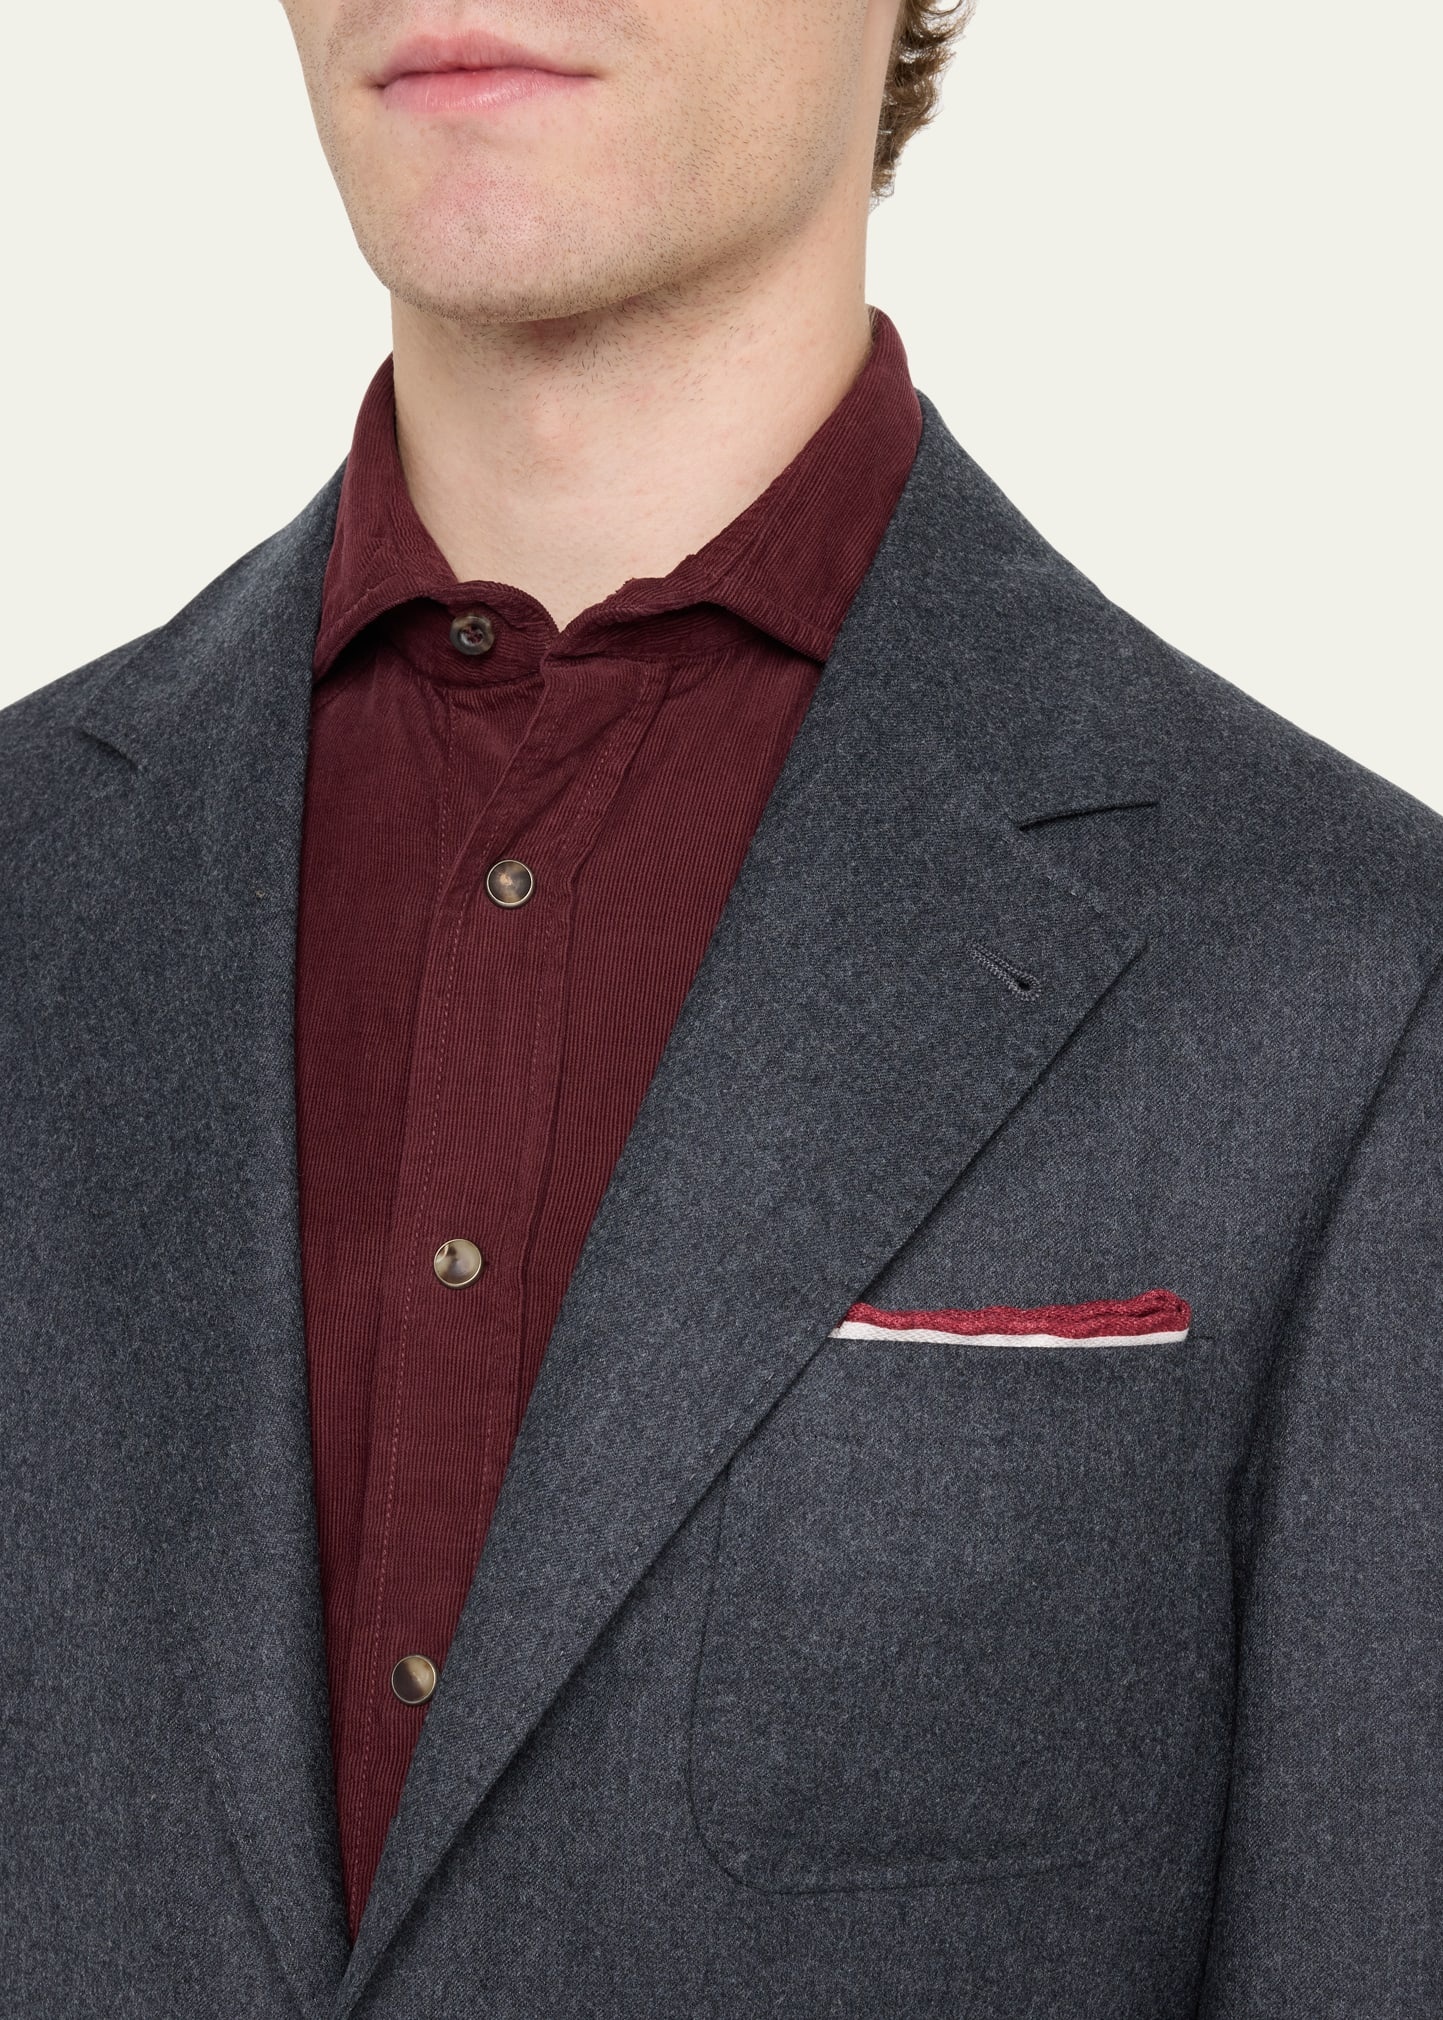 Men's Wool Flannel Patch-Pocket Suit - 5